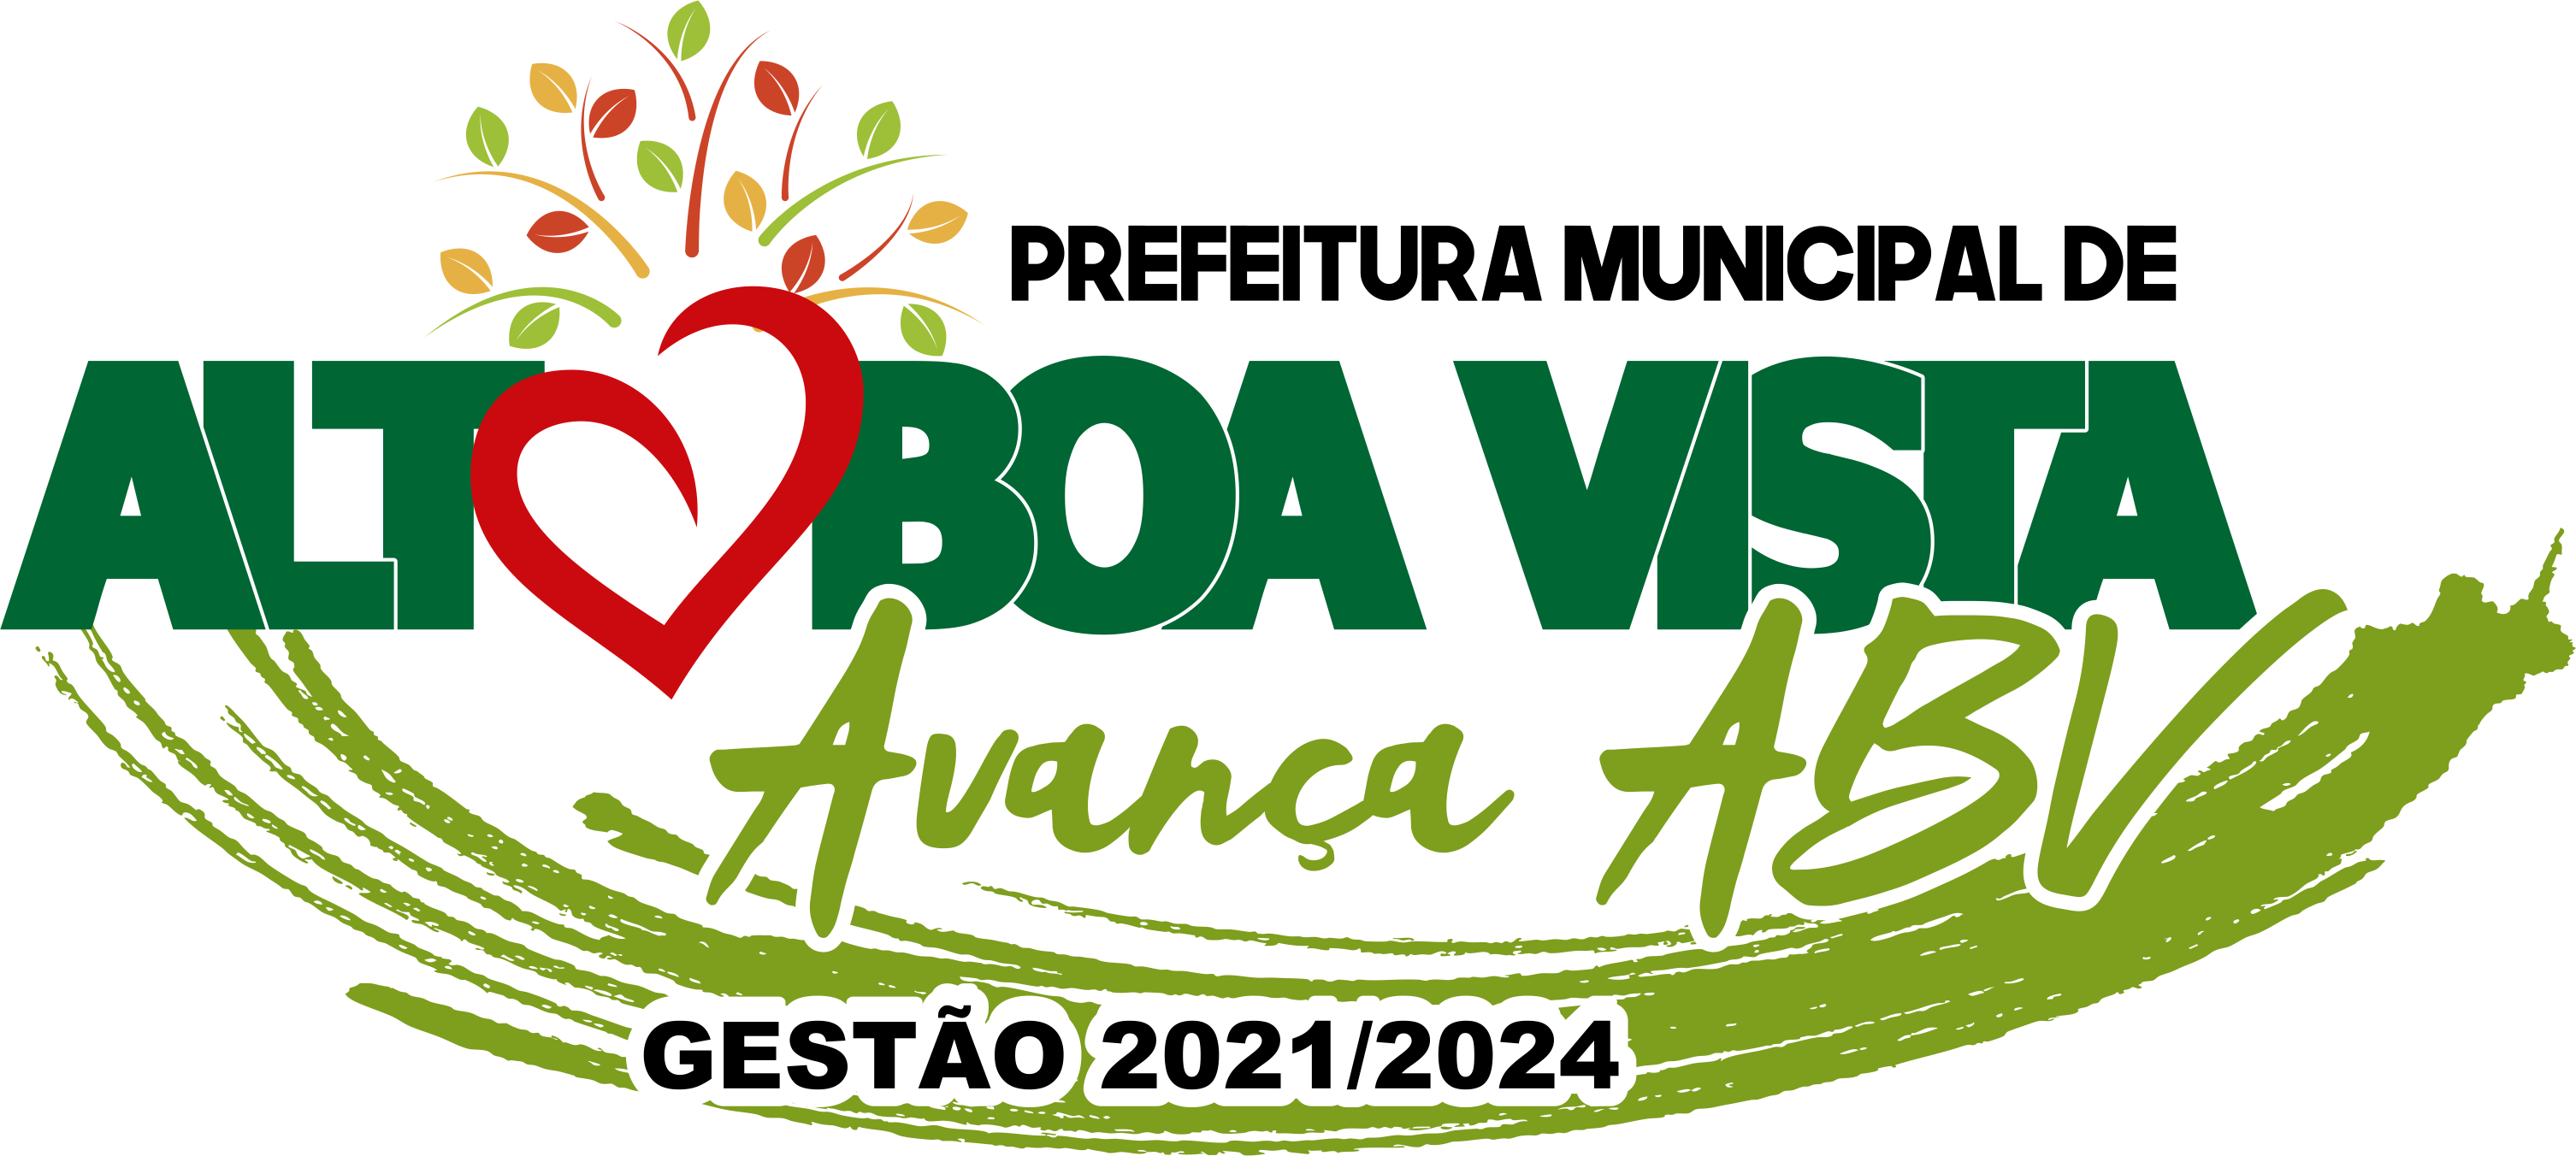 Alto Boa Vista - ADM 2017/2020